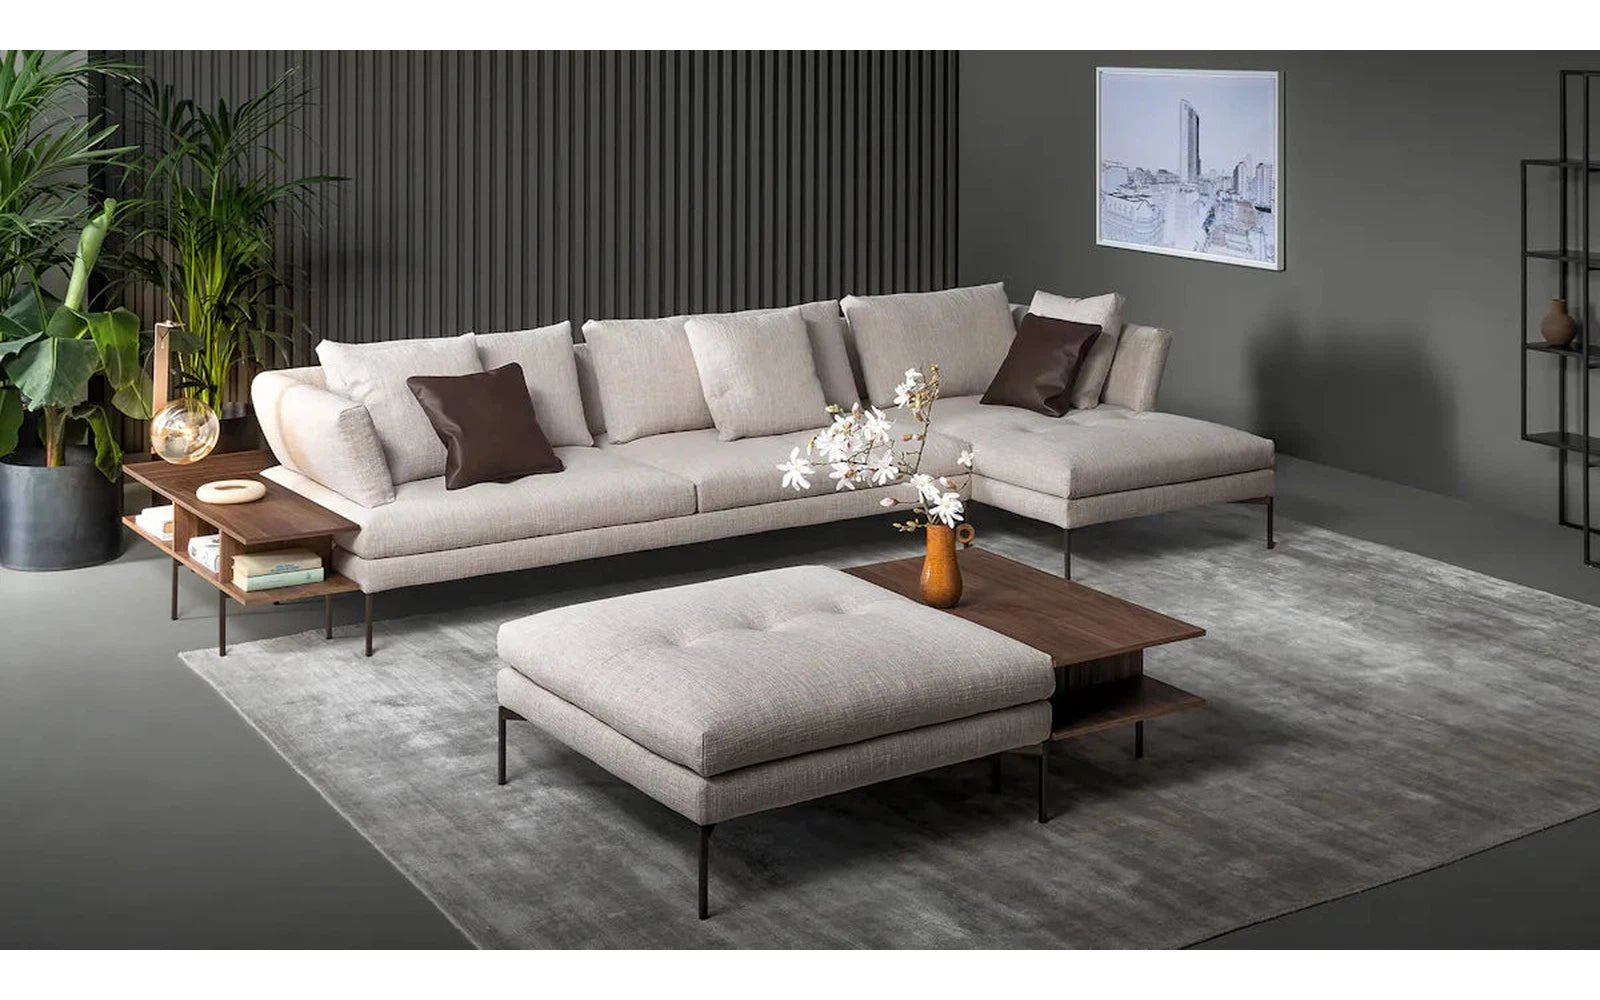 Bonaldo-Aliante Sectional Set Sofa